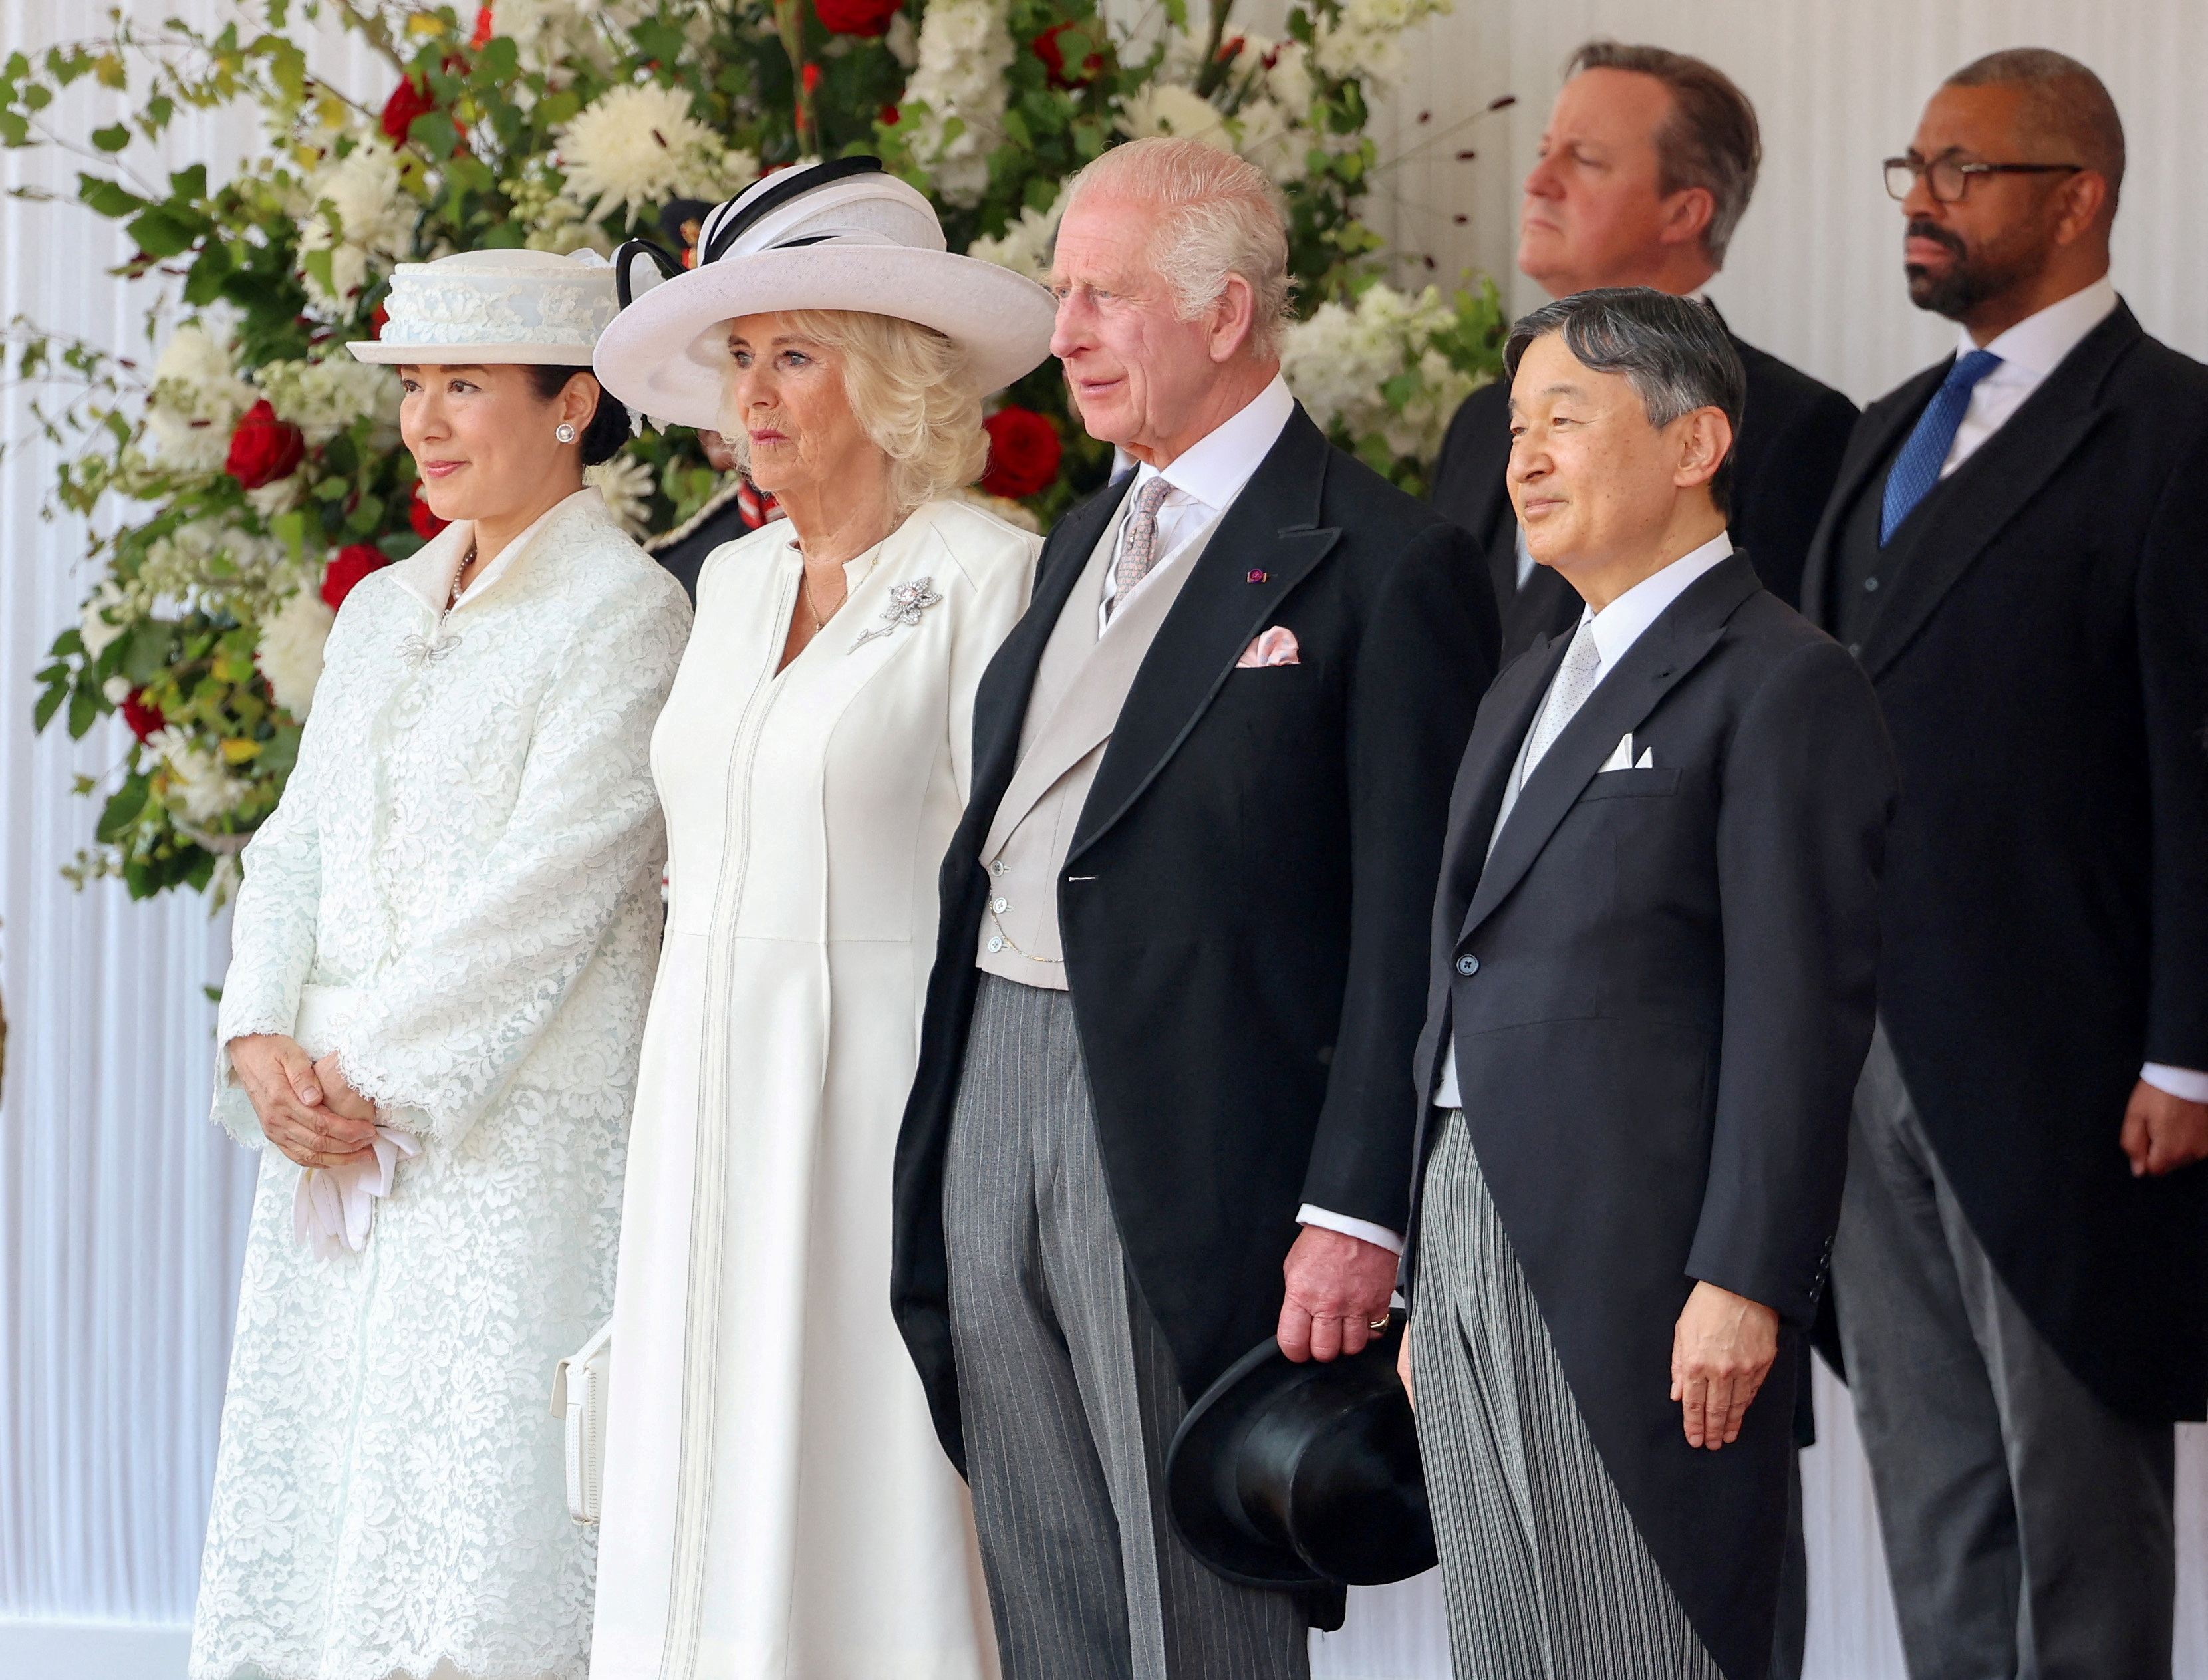 Japanese Emperor Naruhito and Empress Masako visit Britain